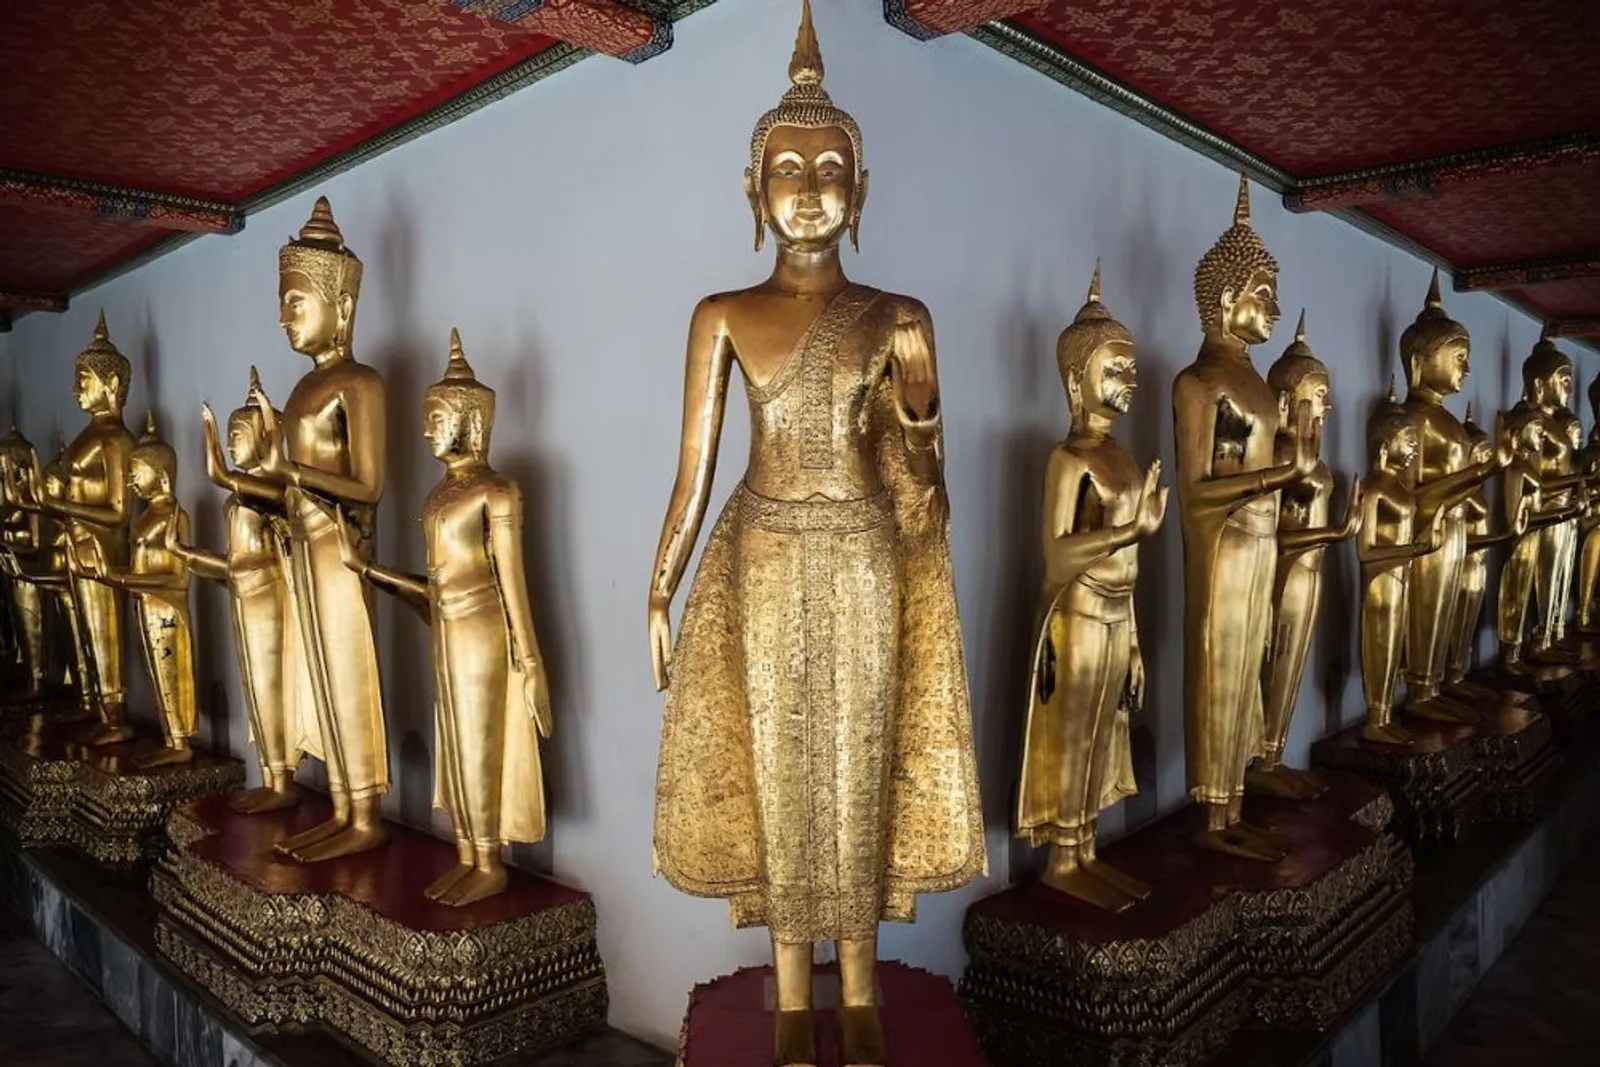 Menikmati Liburan Singkat di Wat Pho Bangkok